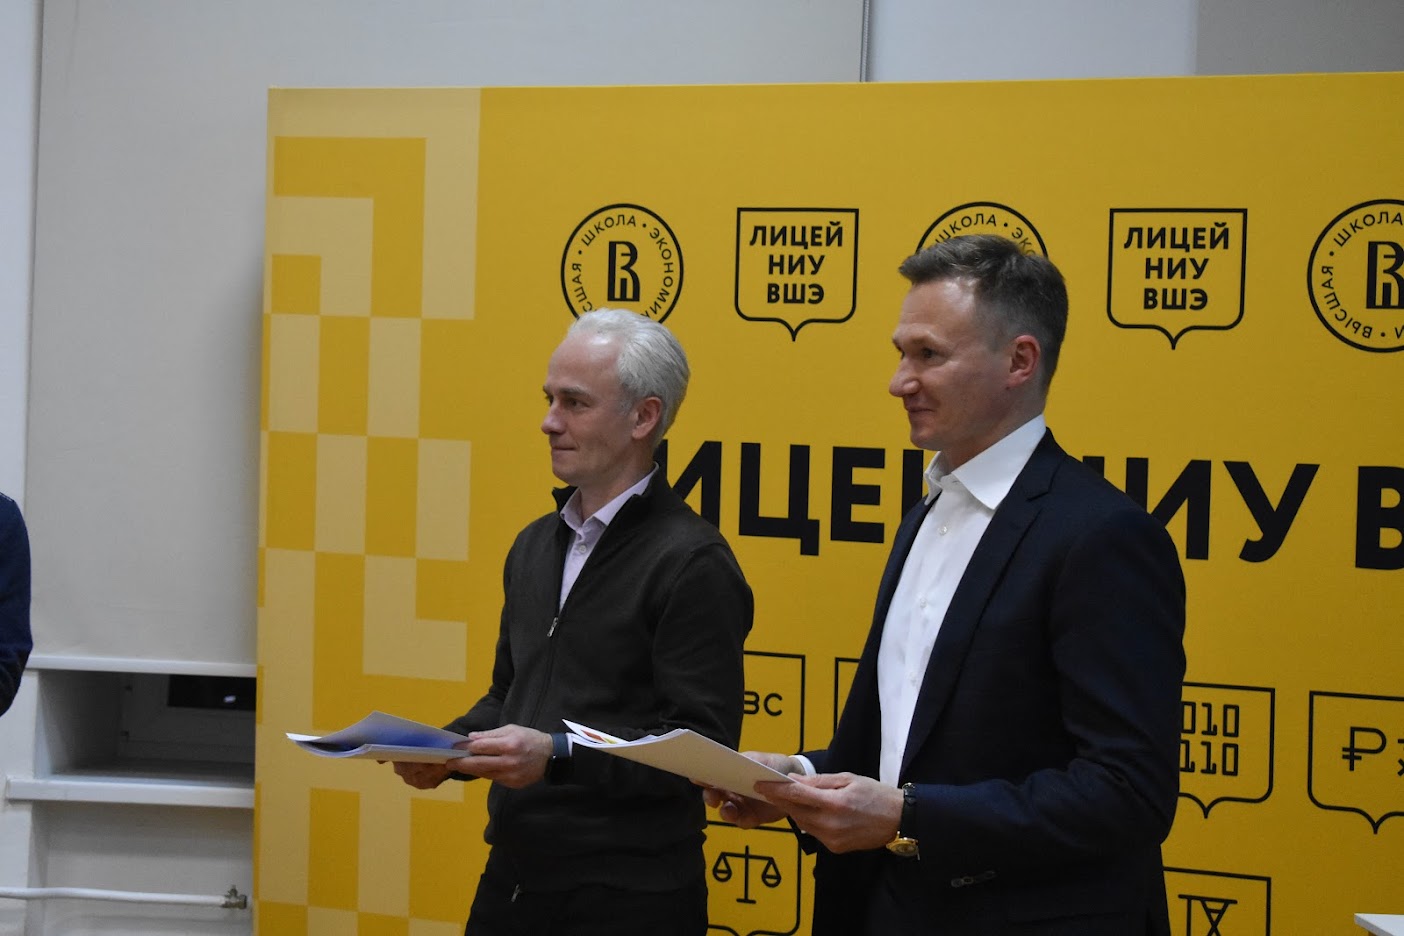 Дмитрий Ефимович Фишбейн и Виктор Николаевич Беляков вручают сертификаты победителям конкурса 